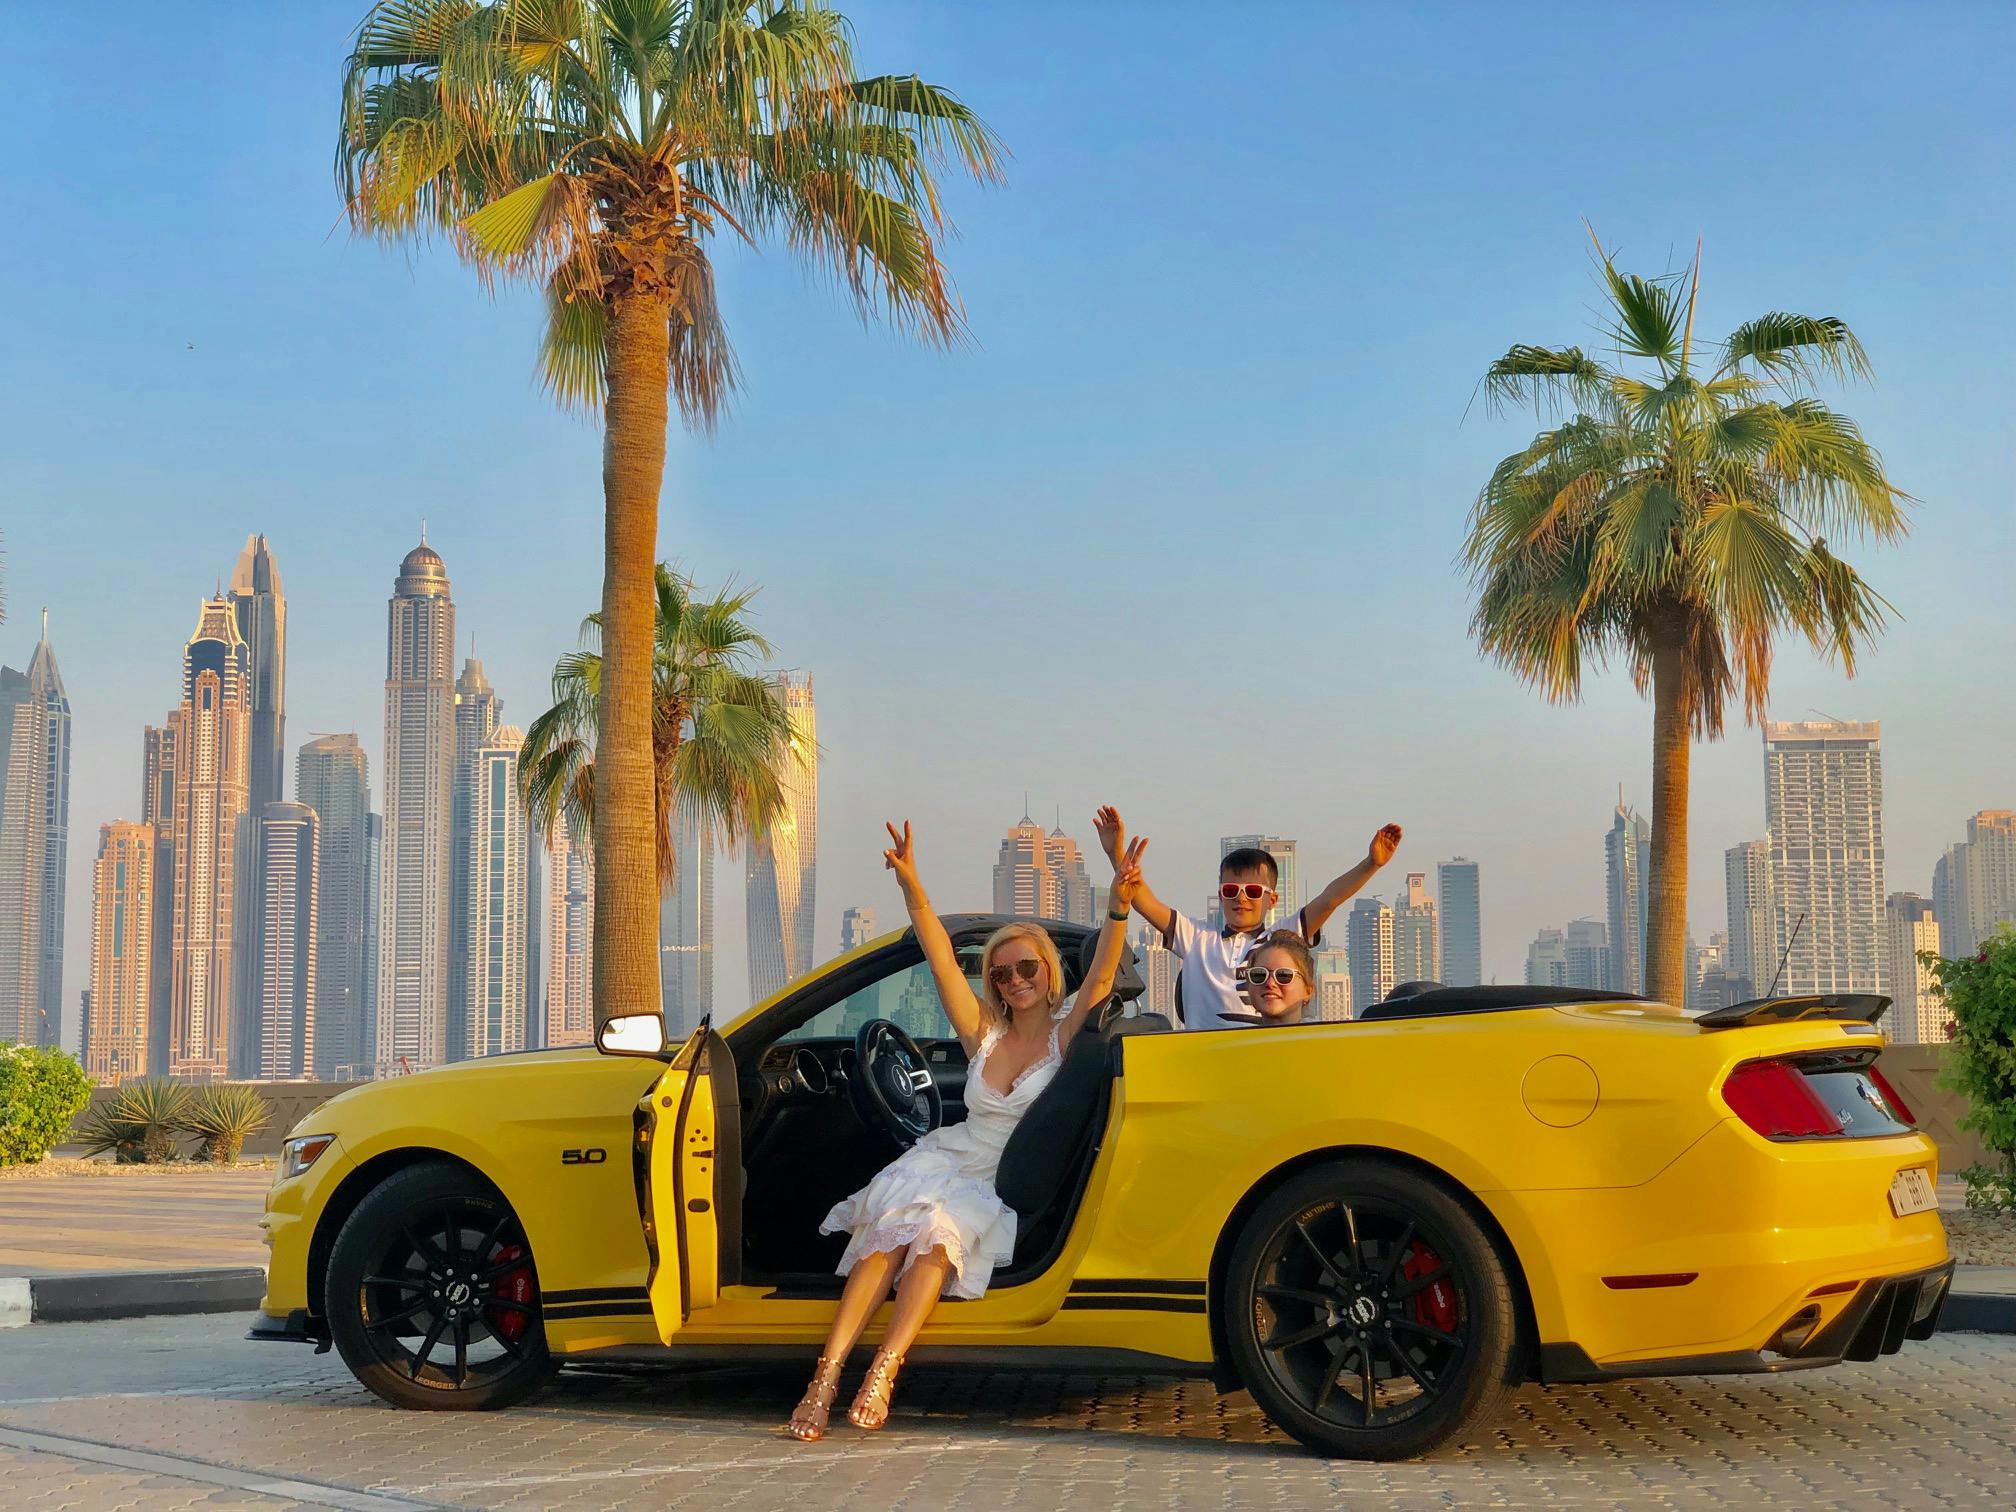 3-stündige private Stadtrundfahrt durch Dubai in einem Cabrio